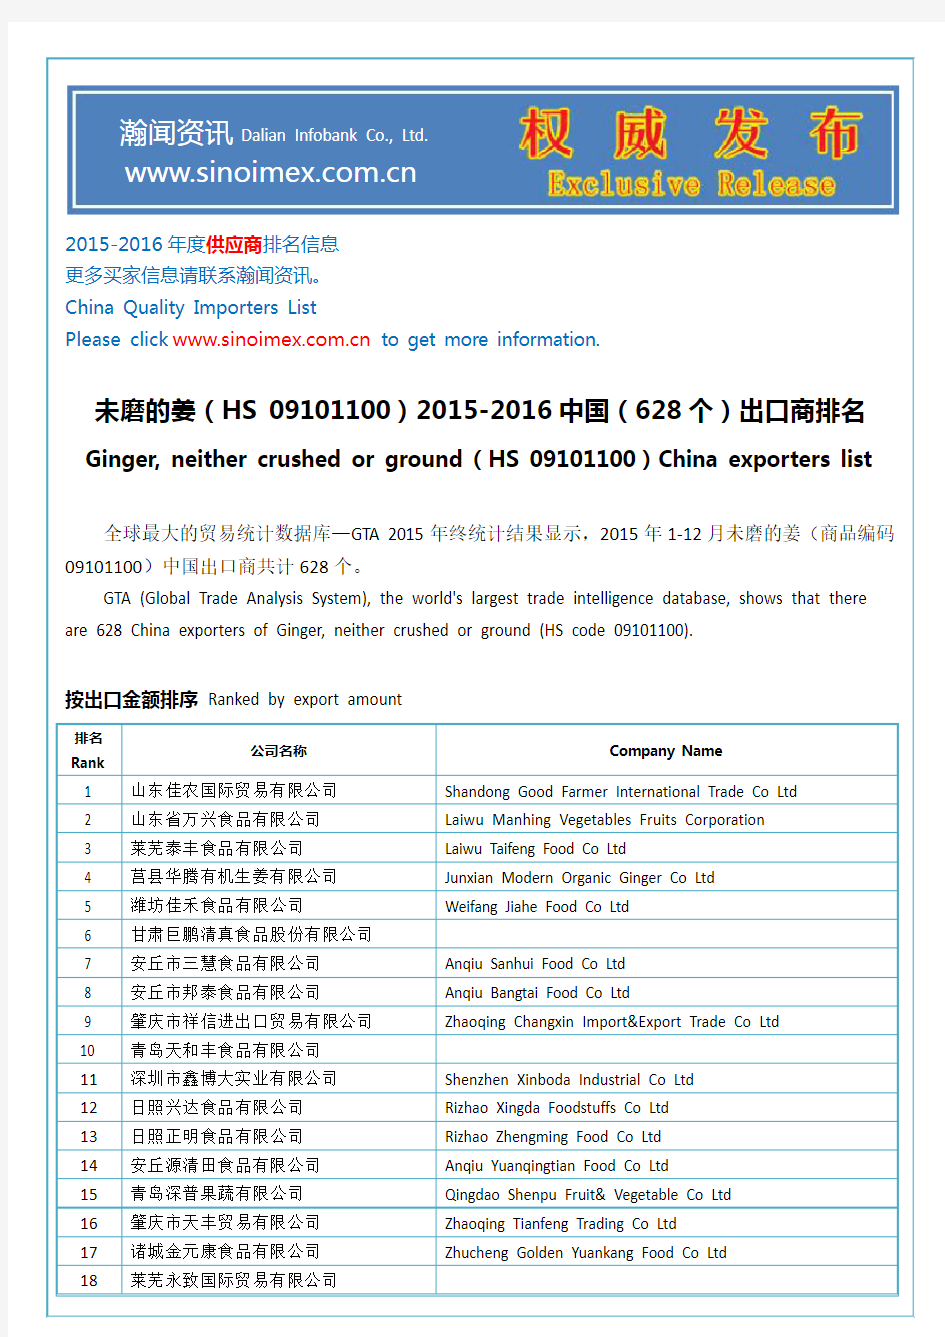 未磨的姜(HS 09101100)2015-2016中国(628个)出口商排名